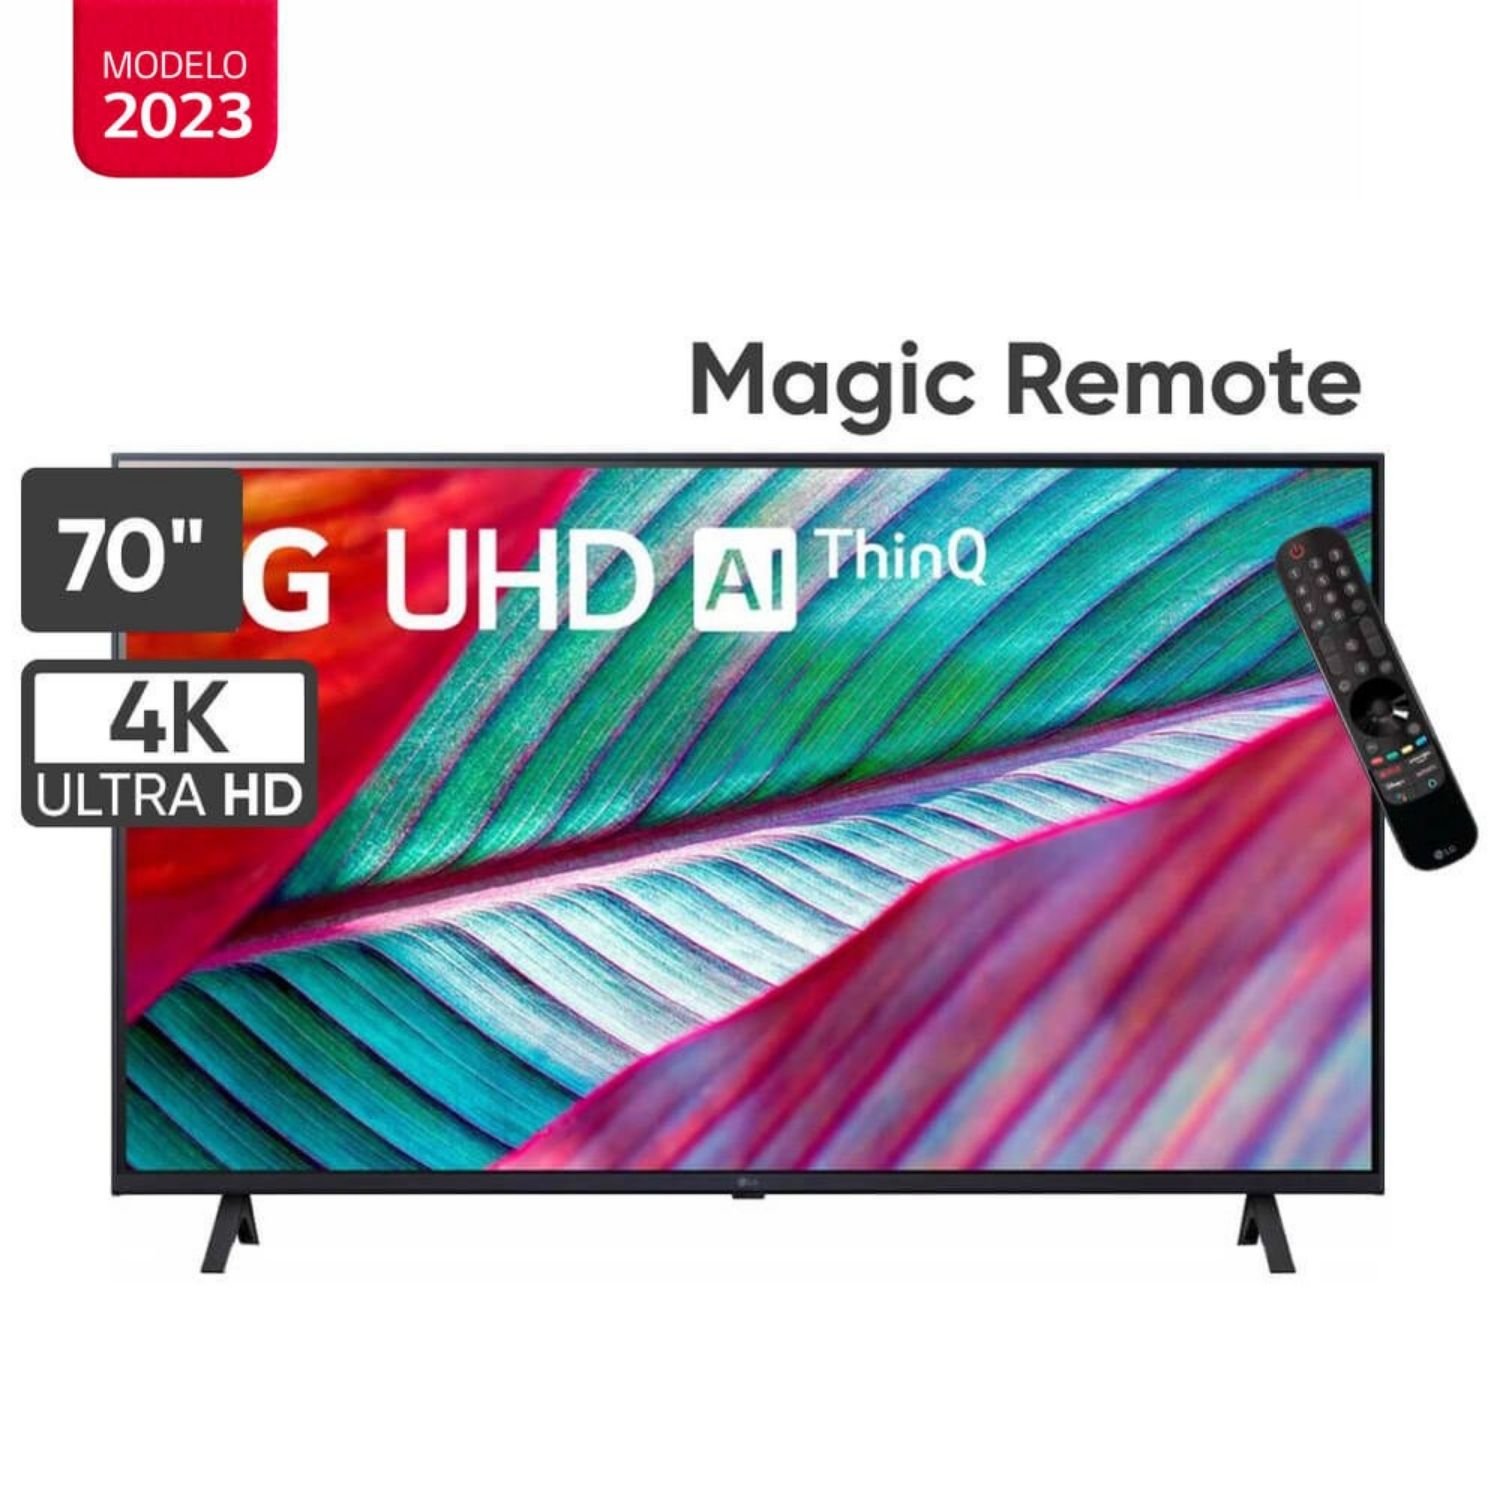 Televisor LG 70" LED Smart TV Ultra HD 4K con ThinQ AI 70UR8750PSA